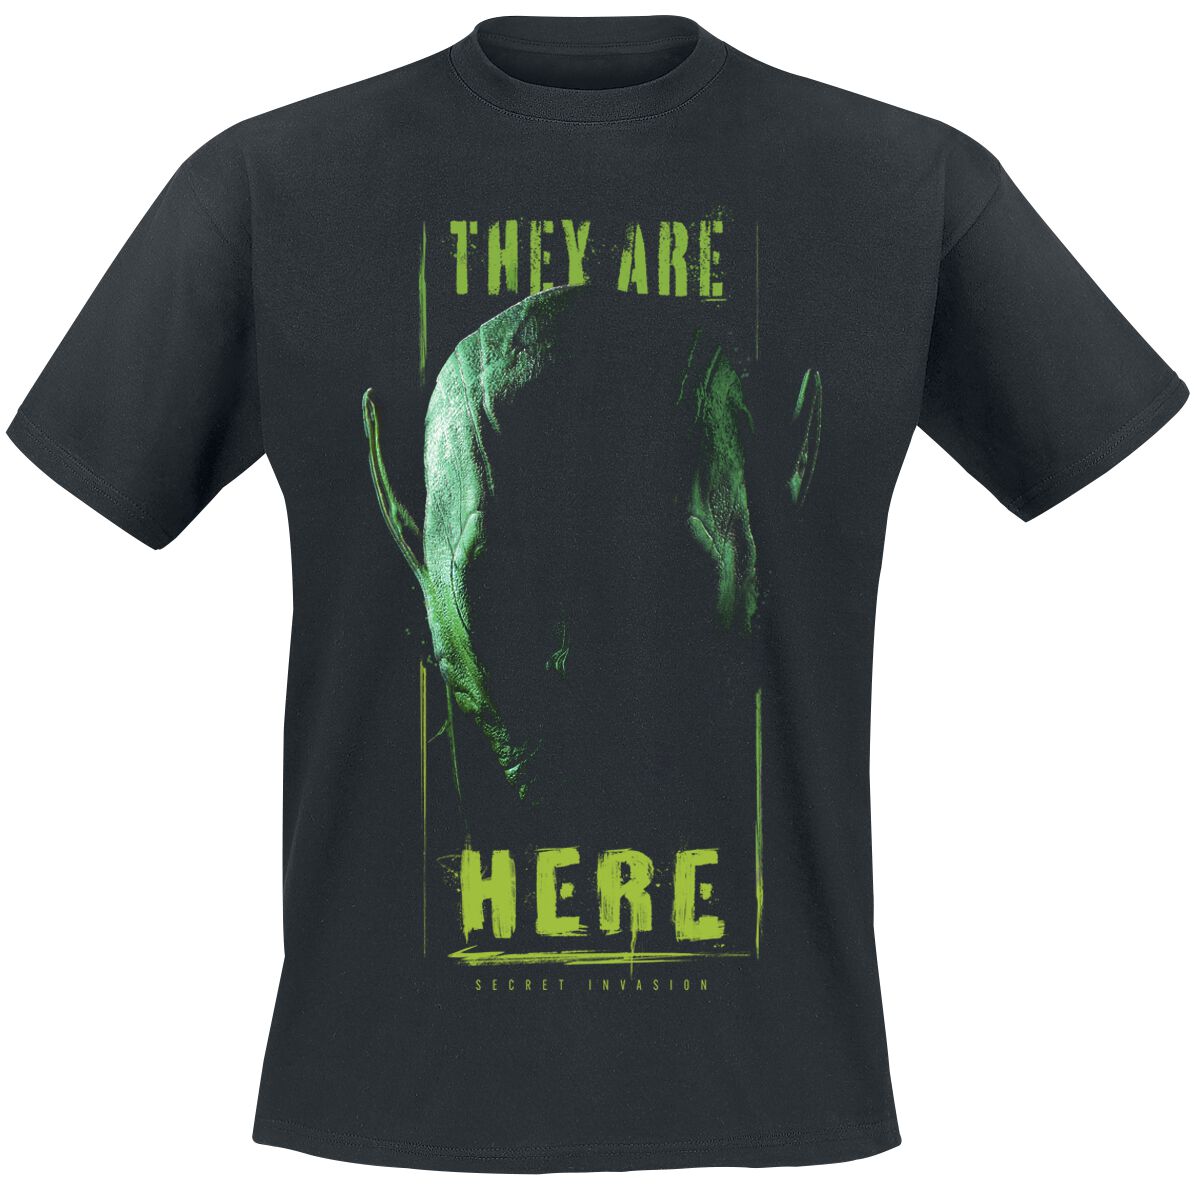 Secret Invasion - Marvel T-Shirt - They Are Here - S bis XXL - für Männer - Größe L - schwarz  - EMP exklusives Merchandise!